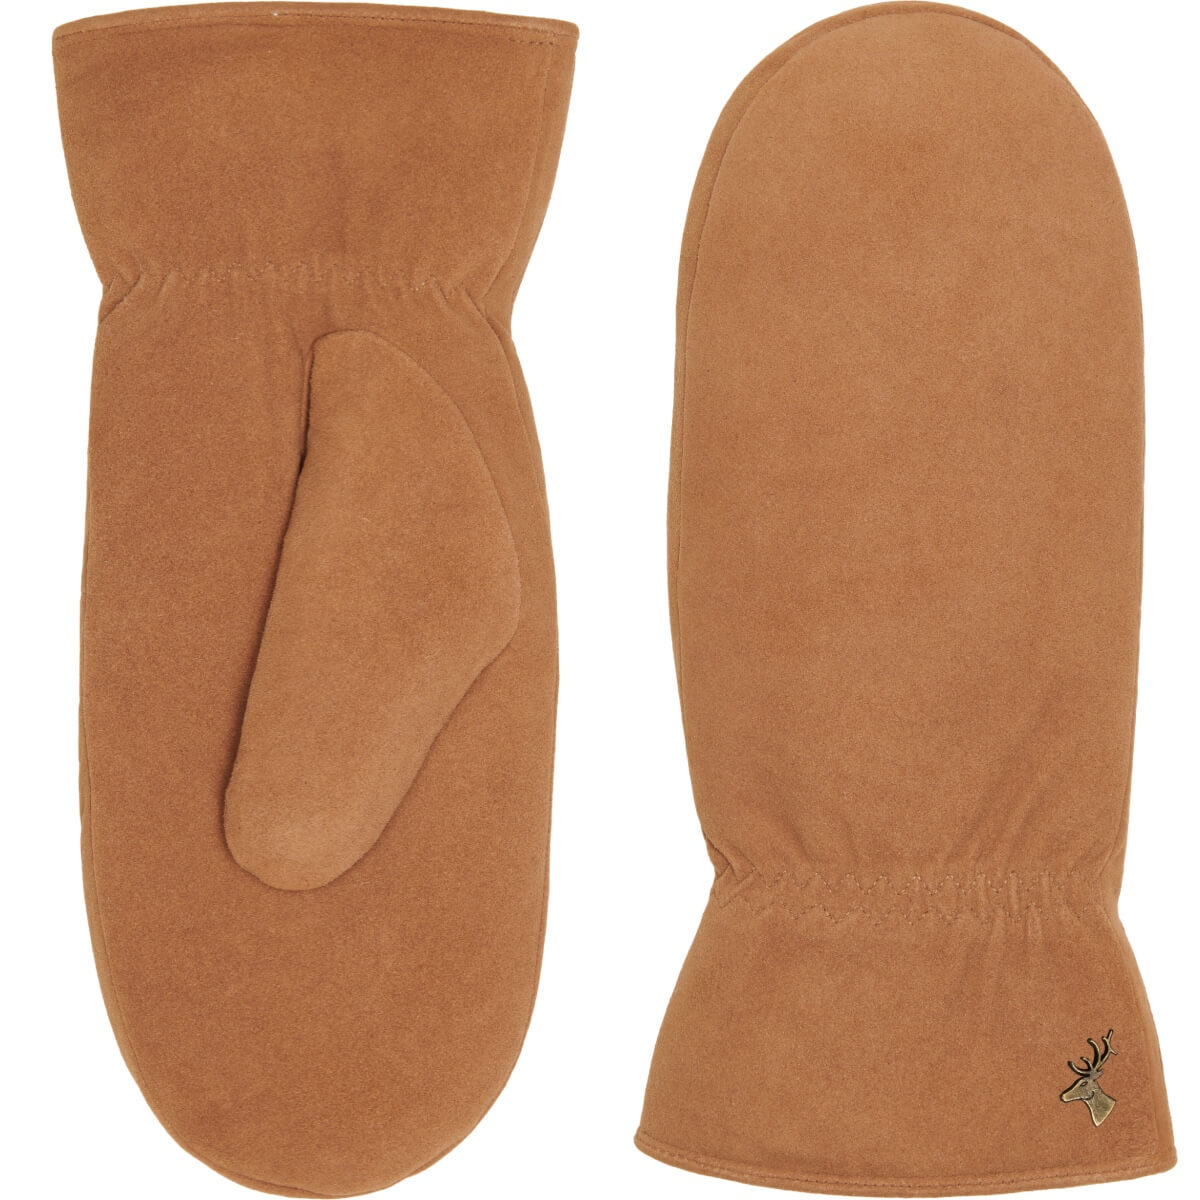 Suede Leather Mittens Camel Hailey - Schwartz & von Halen® - Premium Leather Gloves - 2